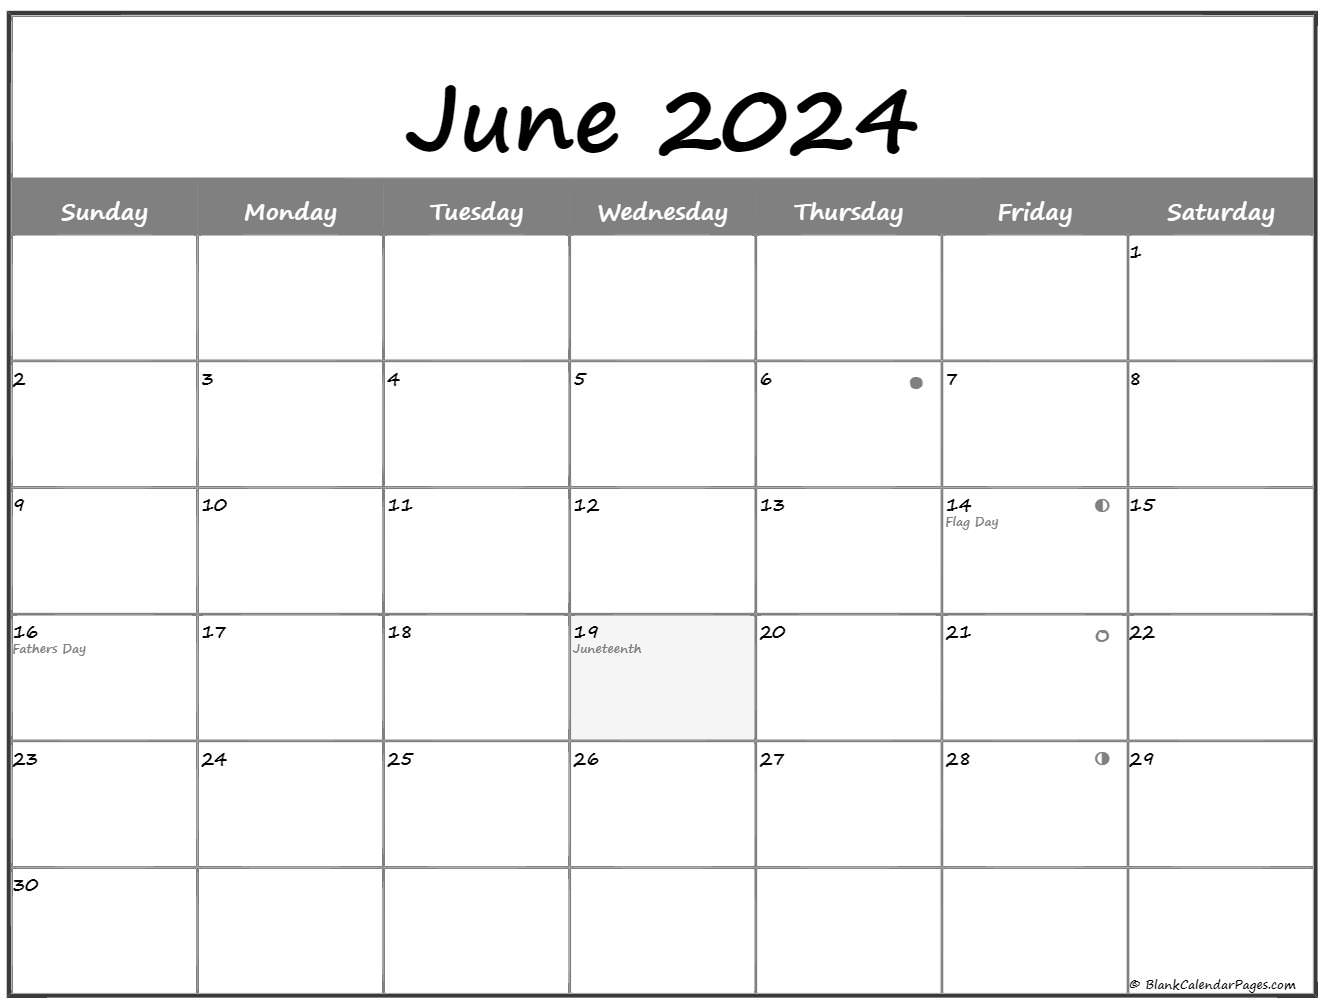 New Moon Calendar June 2022 June 2022 Lunar Calendar | Moon Phase Calendar